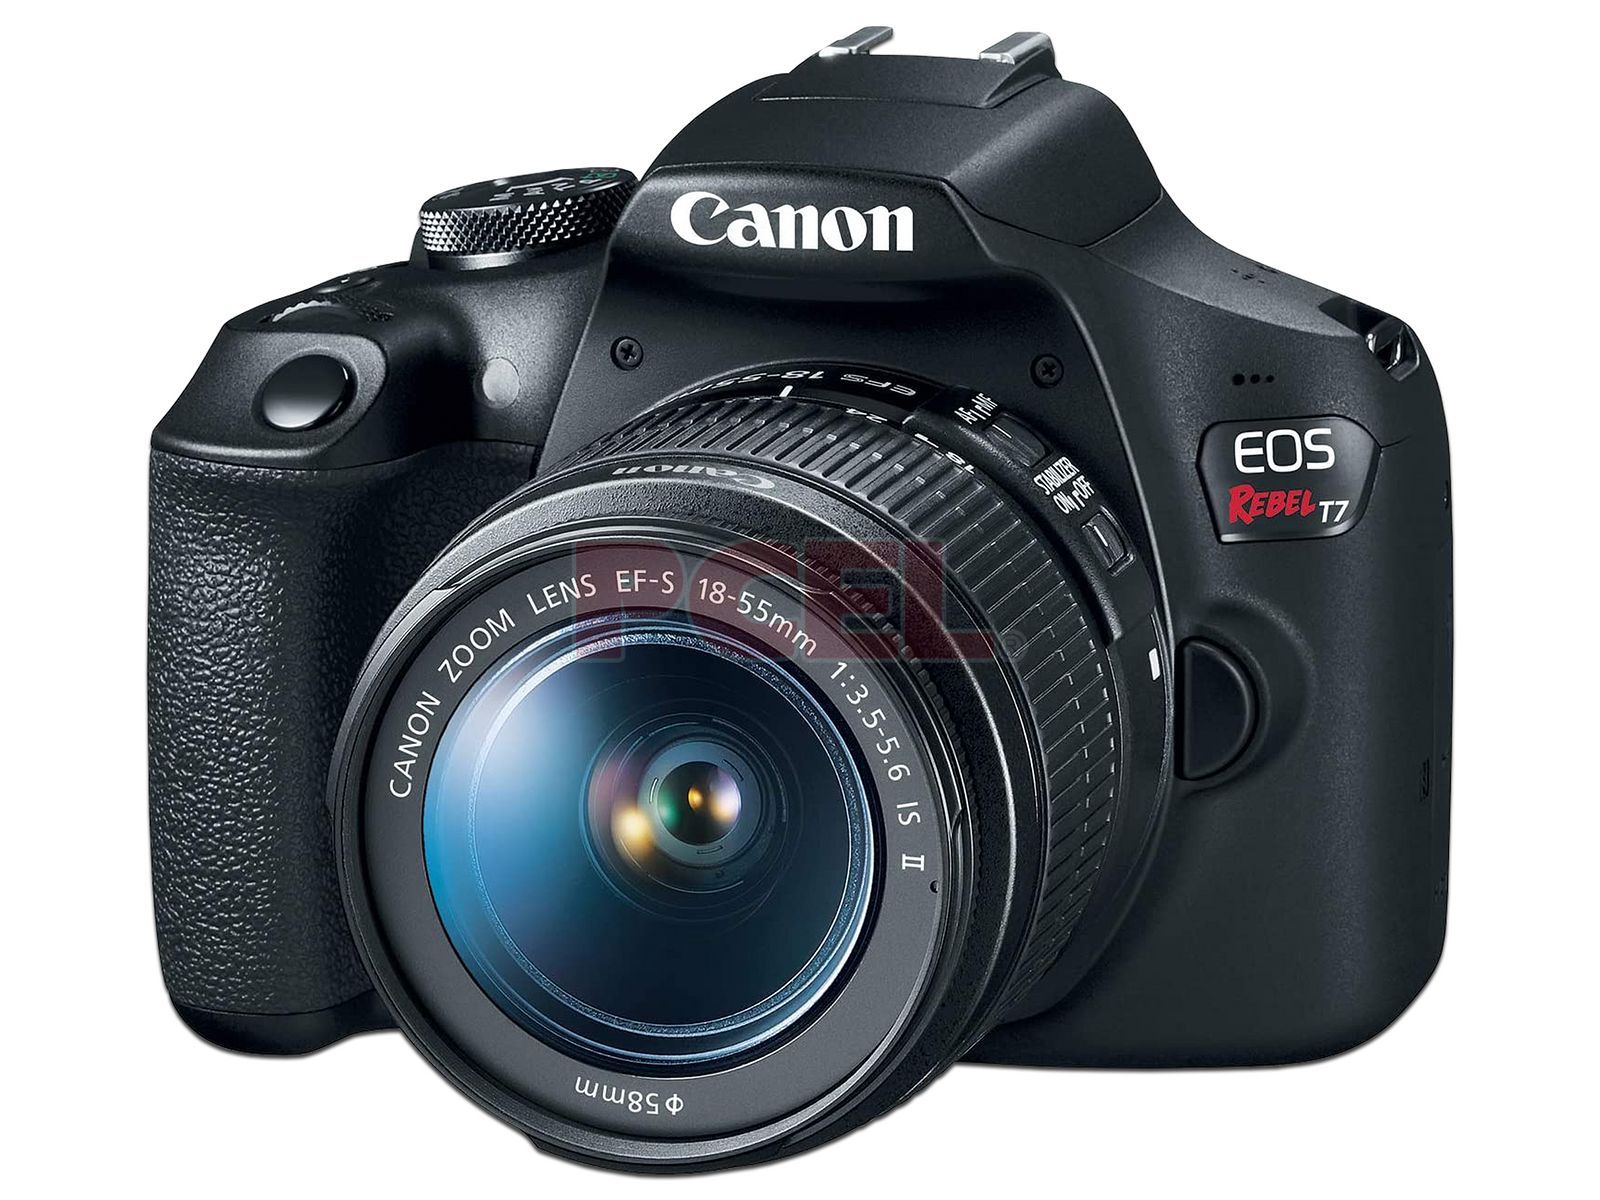 Cámara Fotográfica Digital Canon Eos Rebel T7, 24.1 MP, Pantalla LCD de 3,  Video 1920 x 1080 (Full HD), Lente 18-55mm, NFC, WiFi. Incluye Curso  fotográfico Online y Memoria SD.